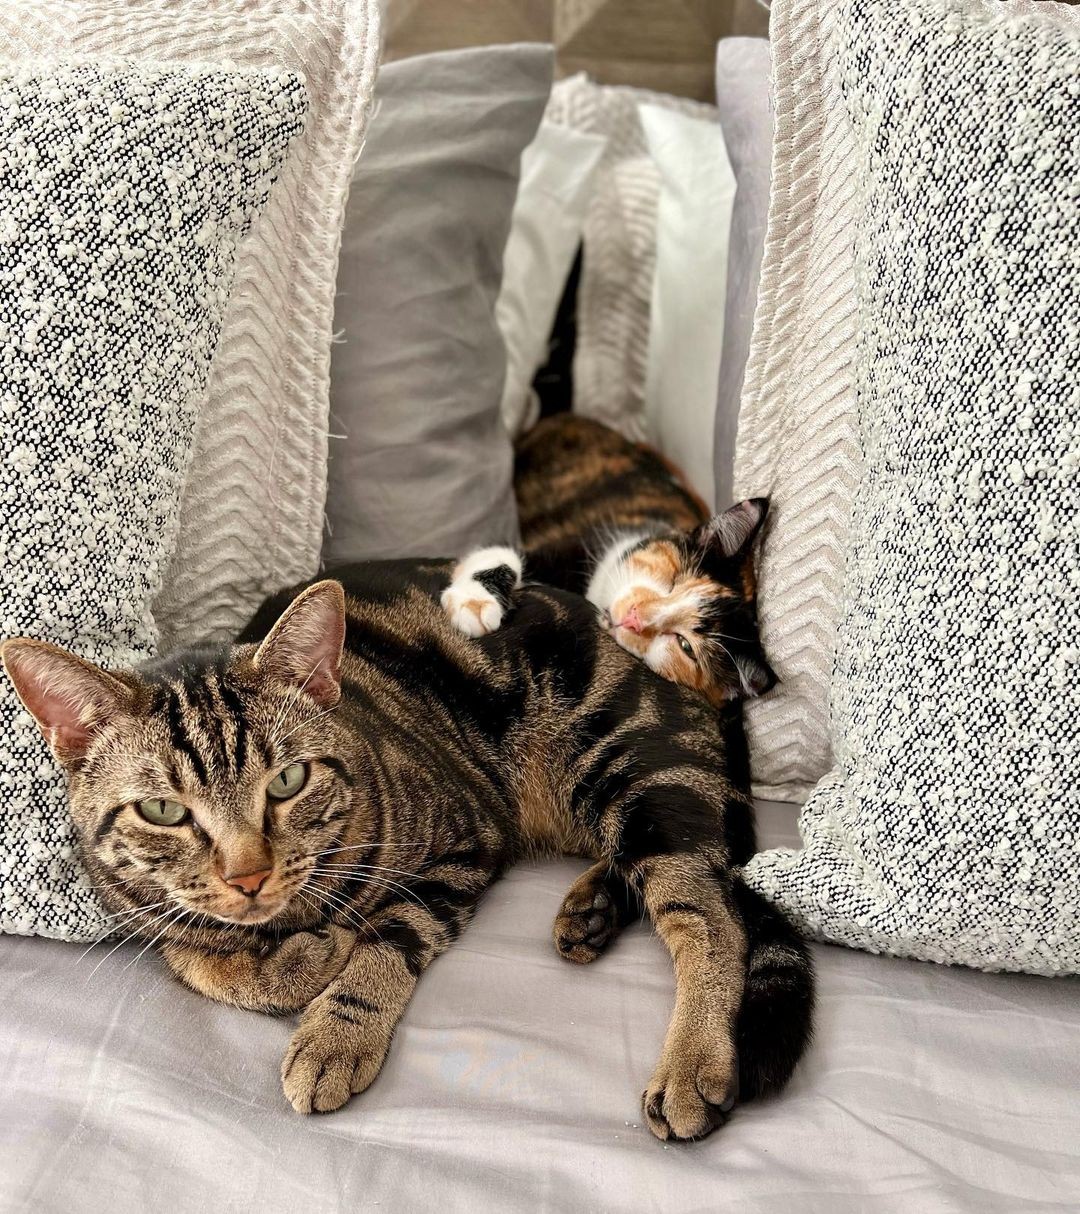 As duas gatinhas fêmeas dormindo juntas  (Foto: Instagram / @ dontstopmeowing / Reprodução)